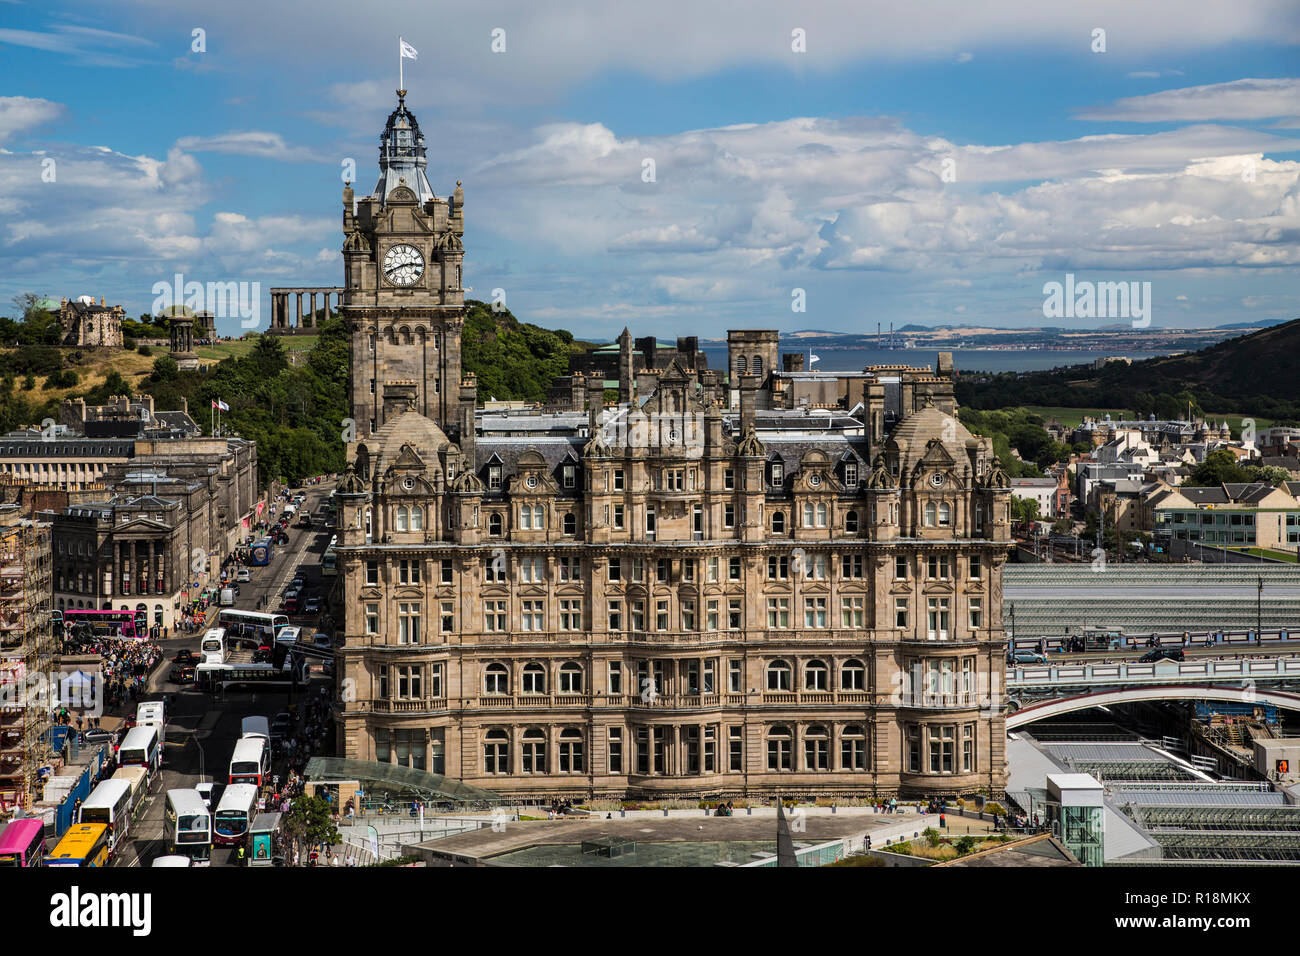 Das Balmoral Hotel, die Princes Street im Sommer Sonnenschein, Edinburgh, Schottland Stockfoto